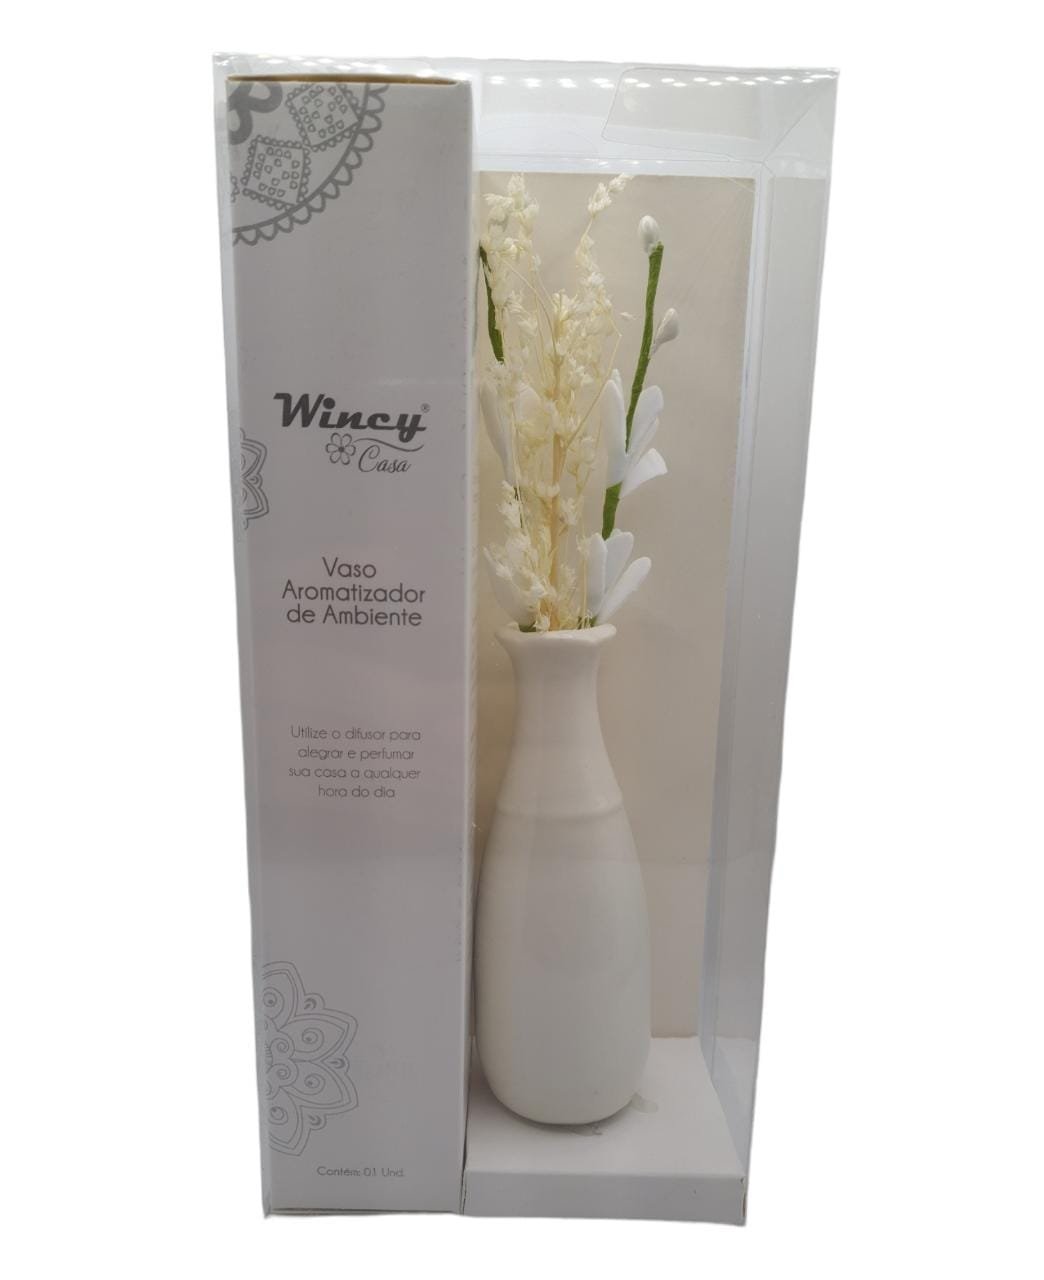 Vaso Floral Aromatizador de Ambiente Porcelana com Varetas:Branco